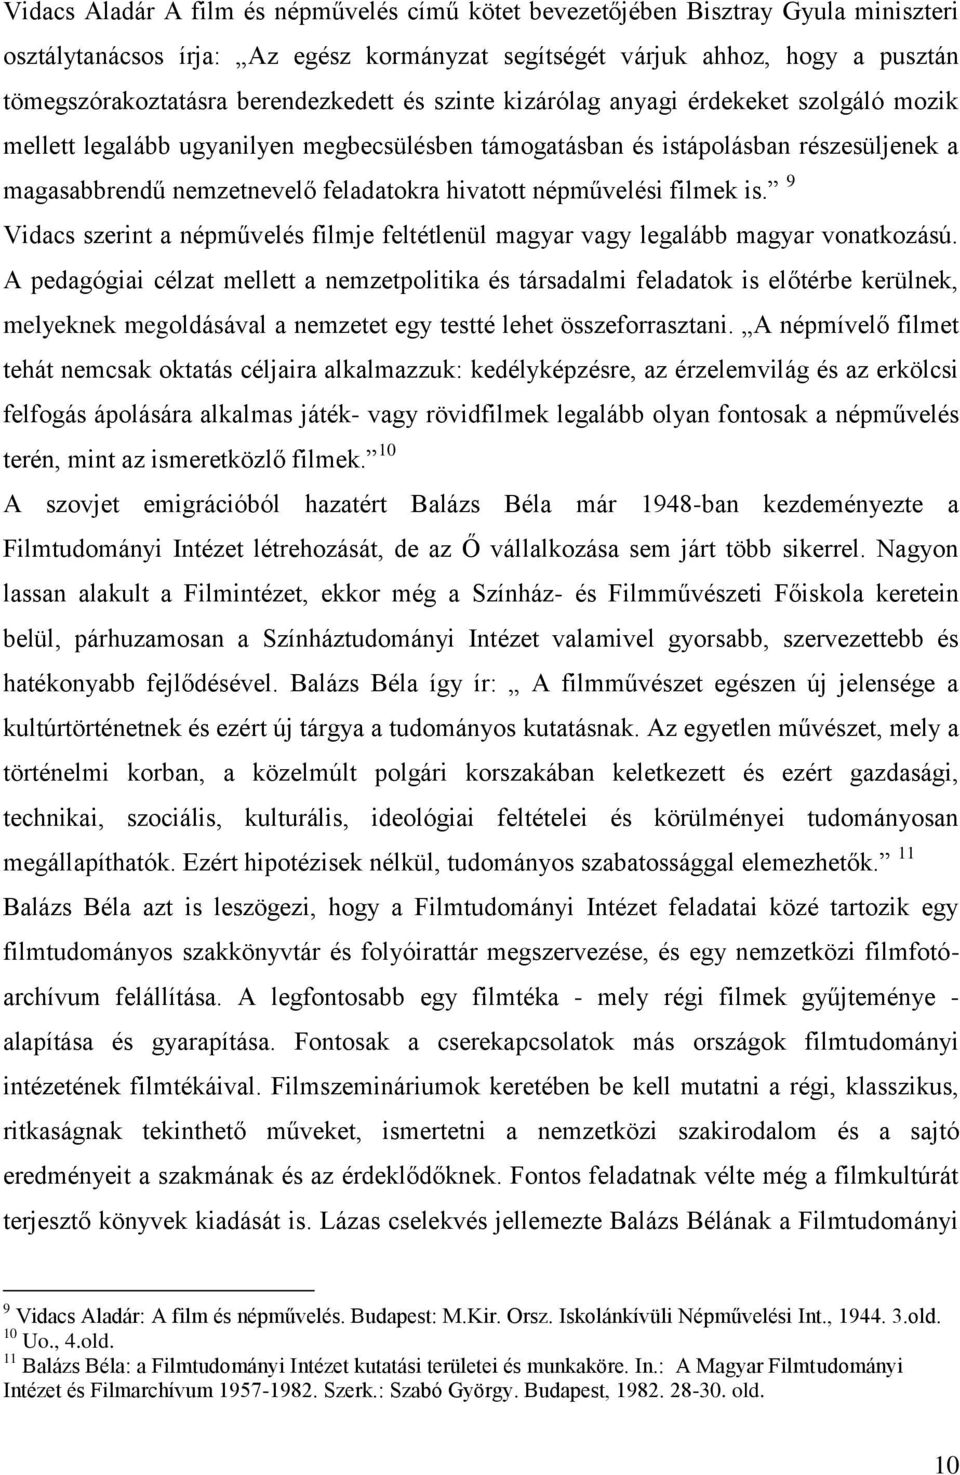 hivatott népművelési filmek is. 9 Vidacs szerint a népművelés filmje feltétlenül magyar vagy legalább magyar vonatkozású.